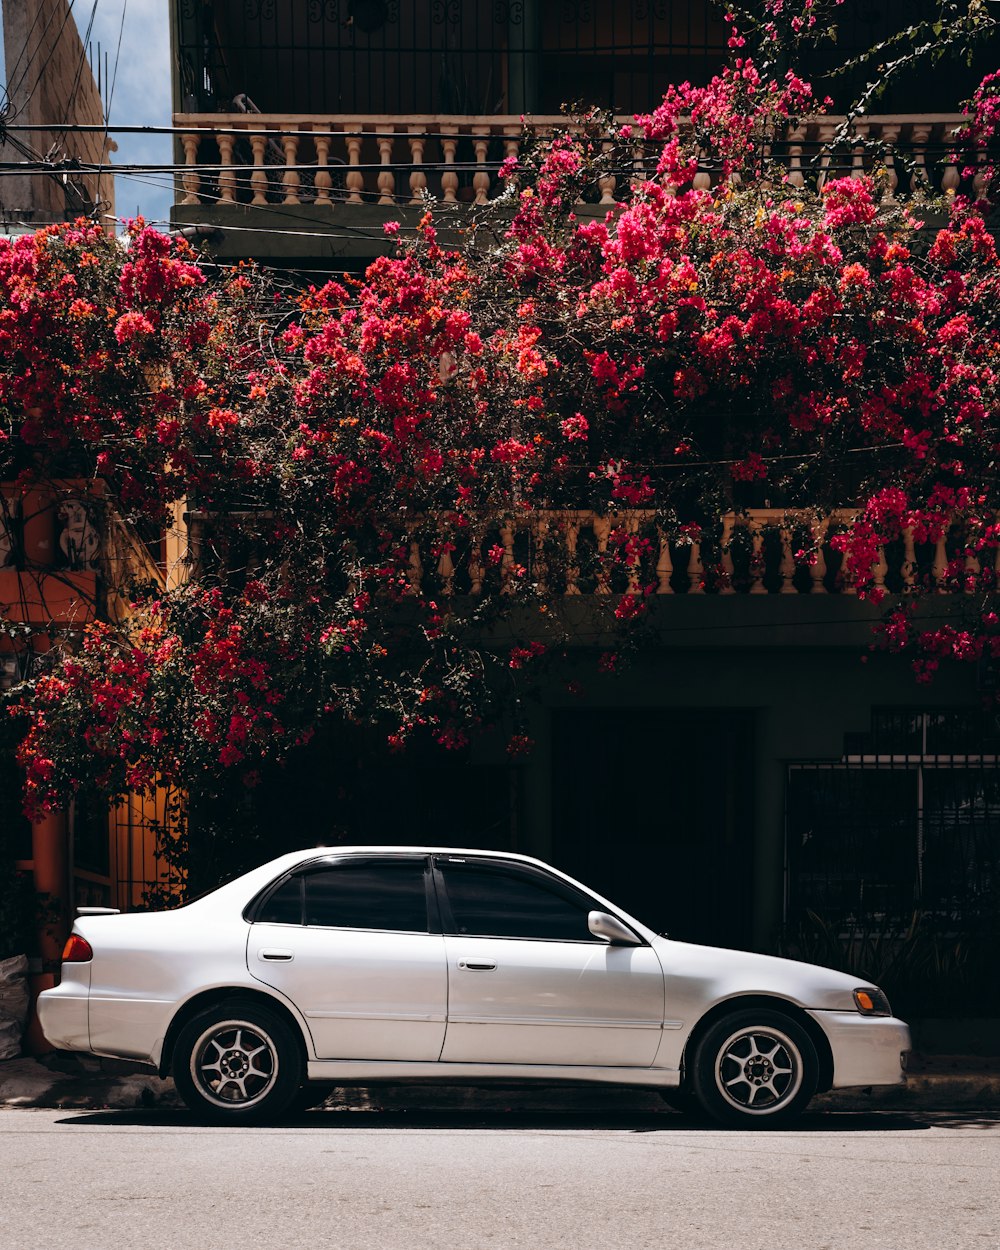 berlina bianca parcheggiata accanto all'albero della foglia rossa